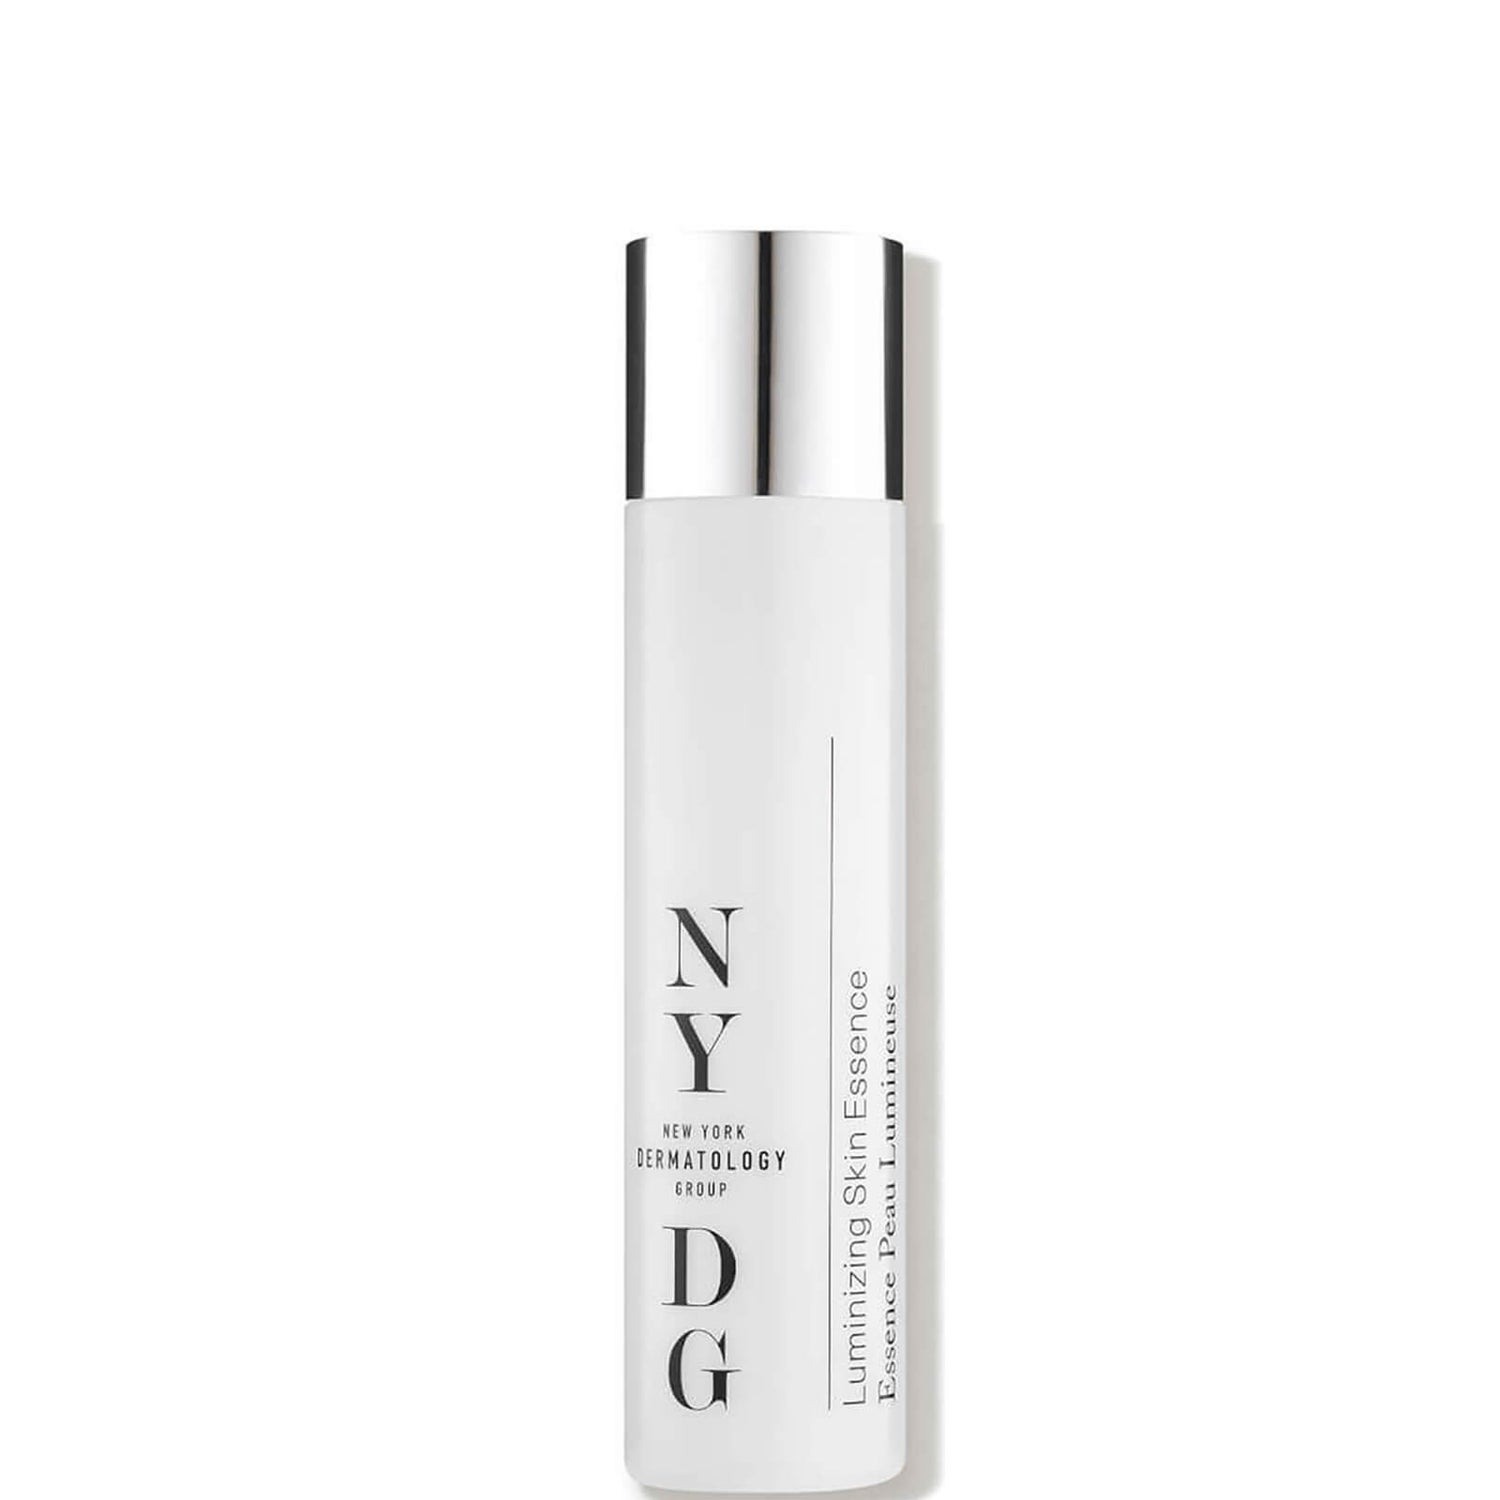 NYDG Skincare Luminizing Skin Essence (4 fl. oz.)